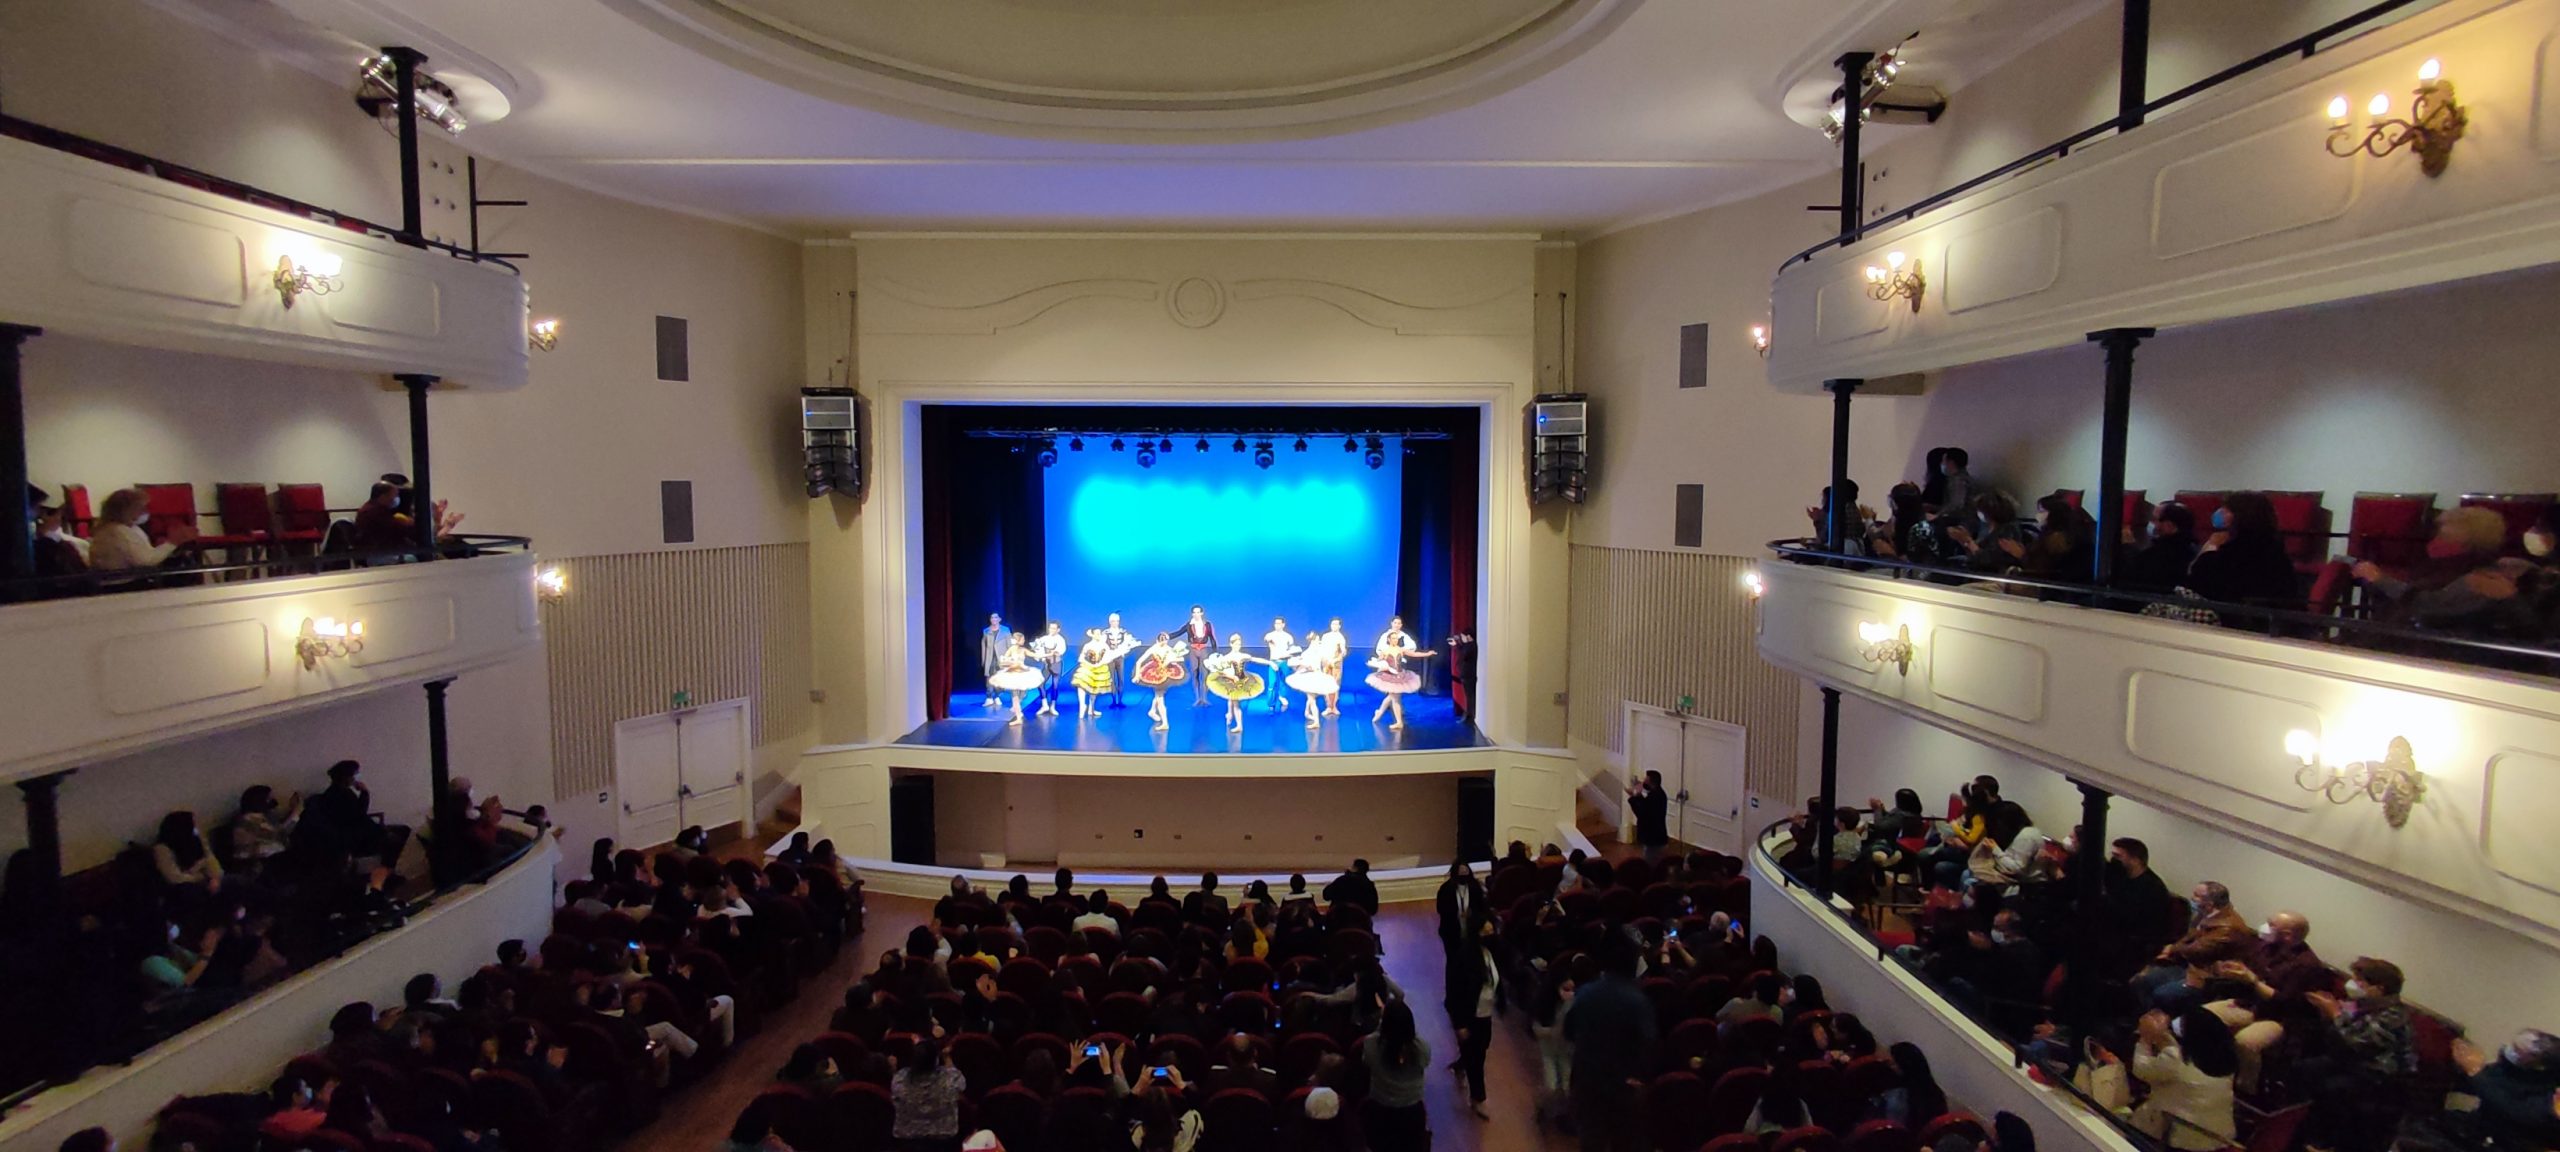 Vecinos repletaron el Teatro Municipal en gran Gala de Ballet organizada por el Municipio | Día de la Danza